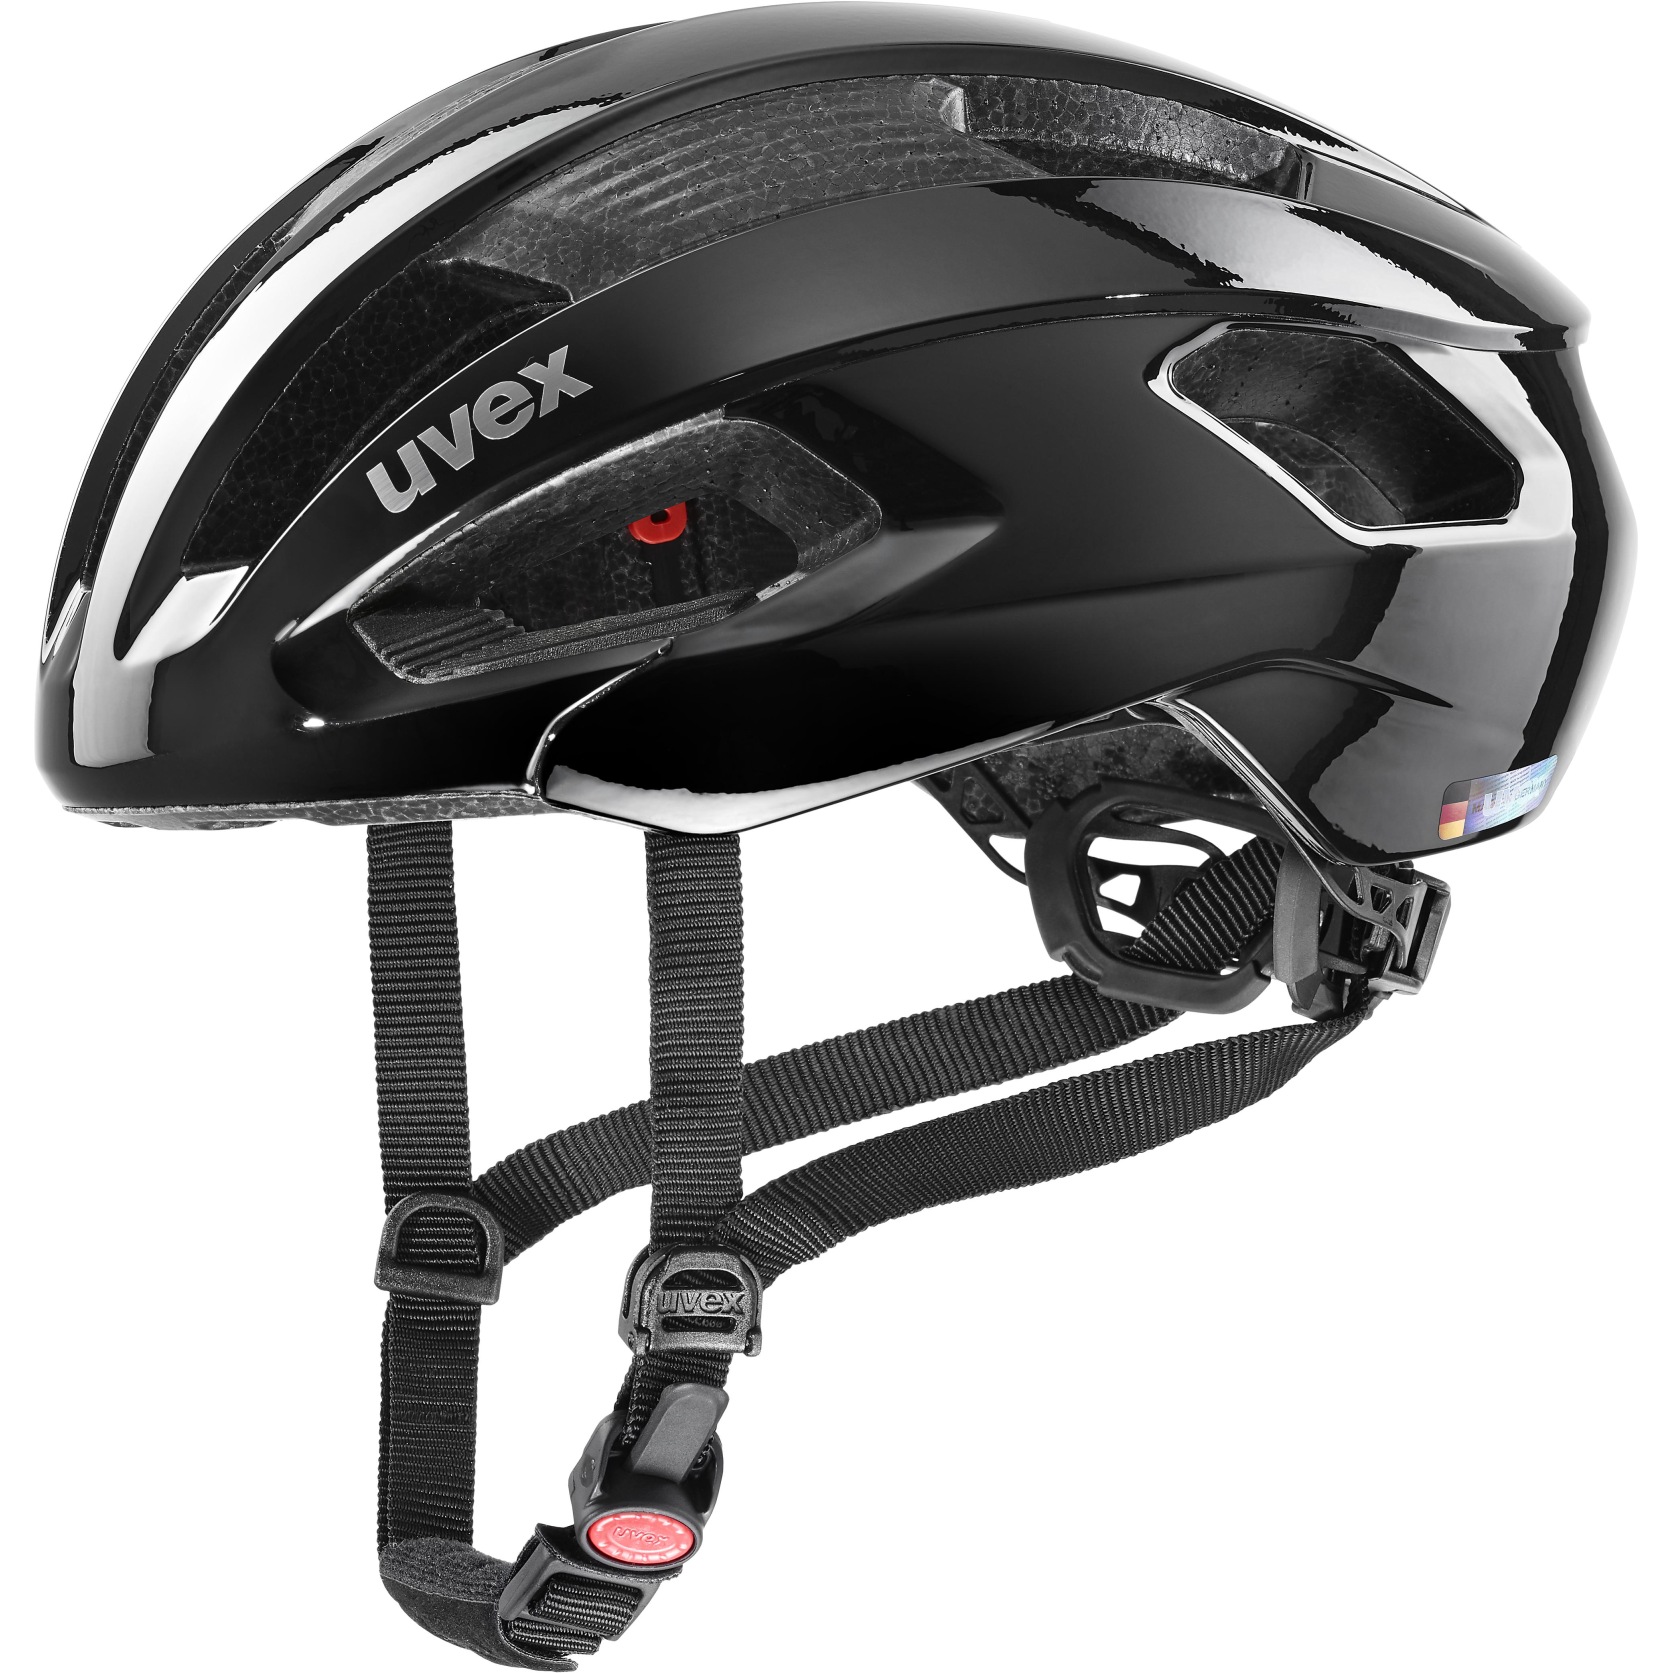 Bild von Uvex rise Helm - all black